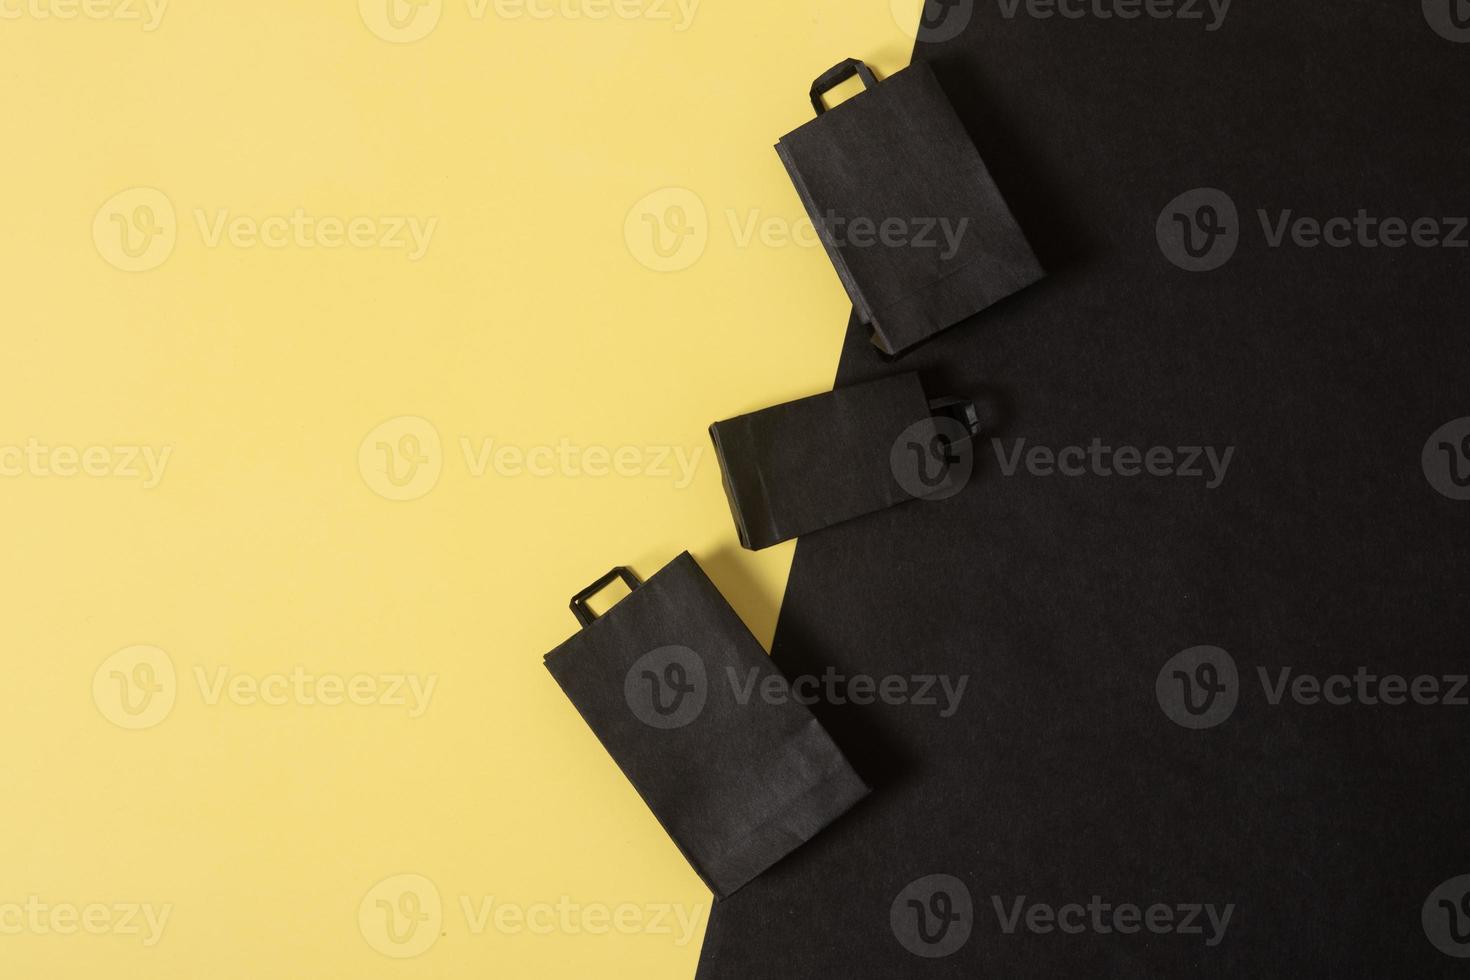 venta de viernes negro simulacro de bolsas de compras en miniatura endecha plana negra y amarilla foto